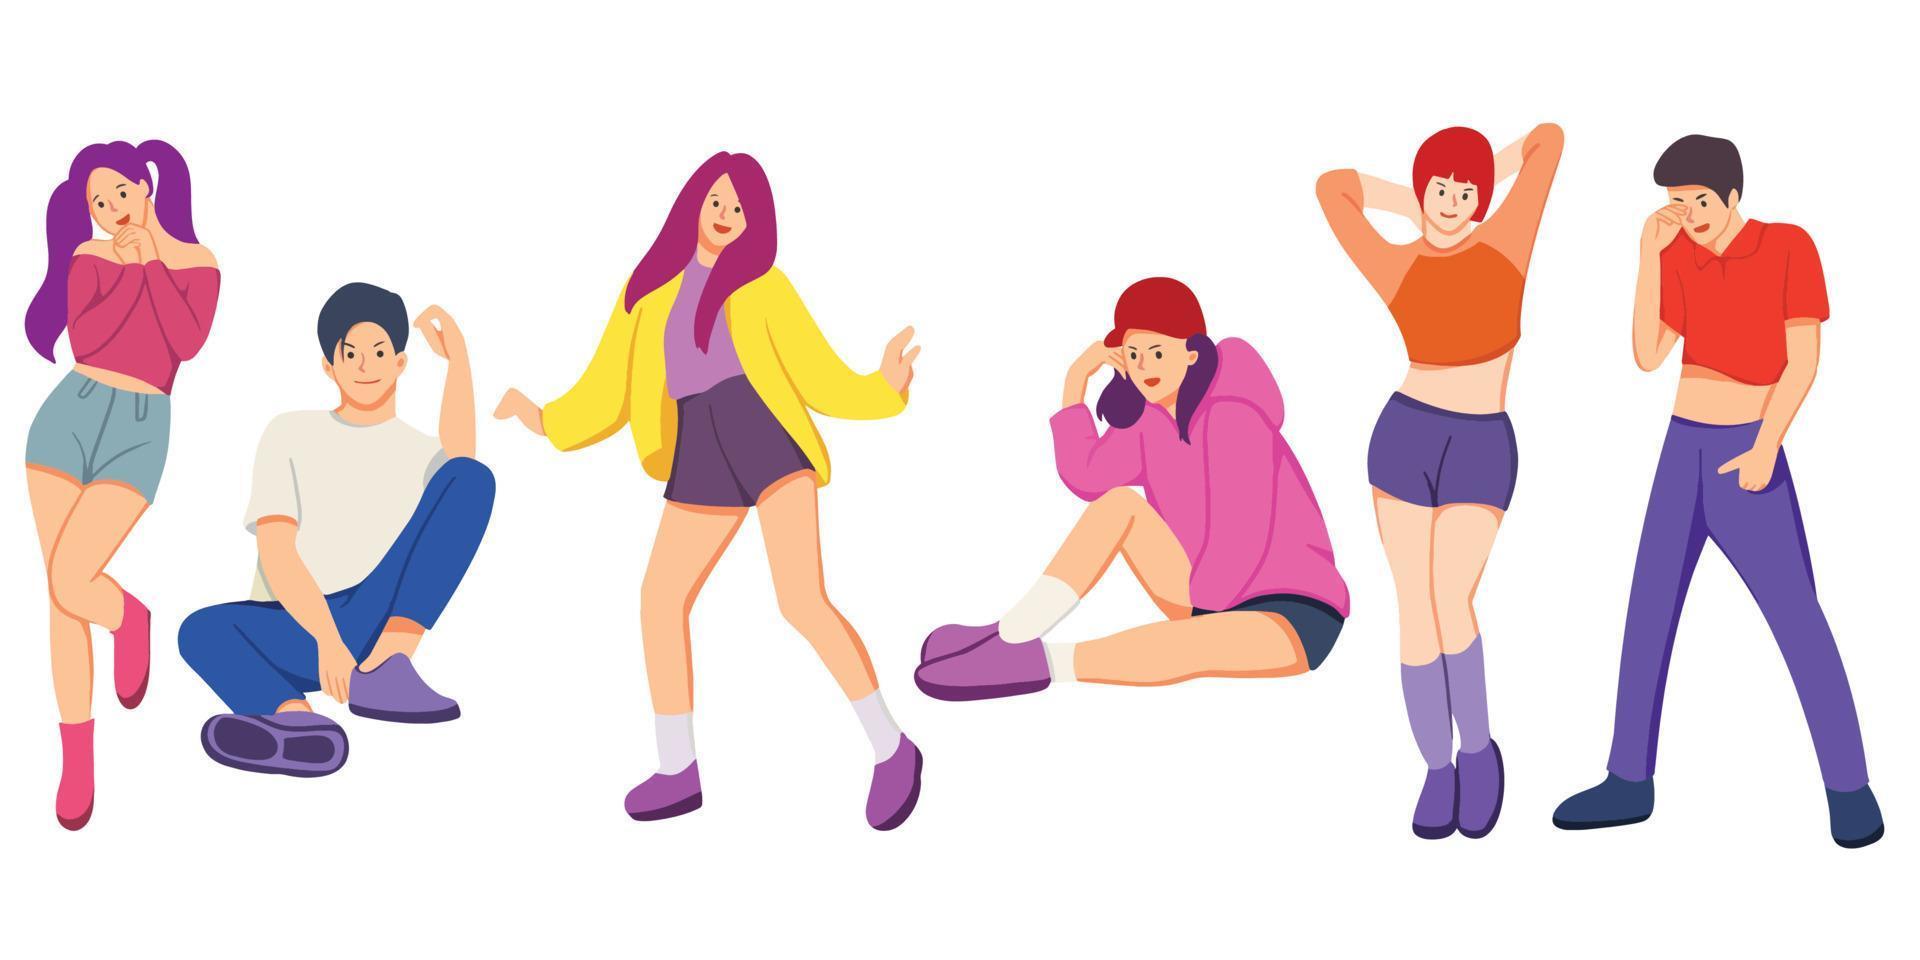 grupo de jóvenes bailarines felices o hombres y mujeres aislados en un fondo blanco. hombres y mujeres jóvenes sonrientes disfrutan de una fiesta de baile. ilustración de vector colorido en estilo de dibujos animados plana.